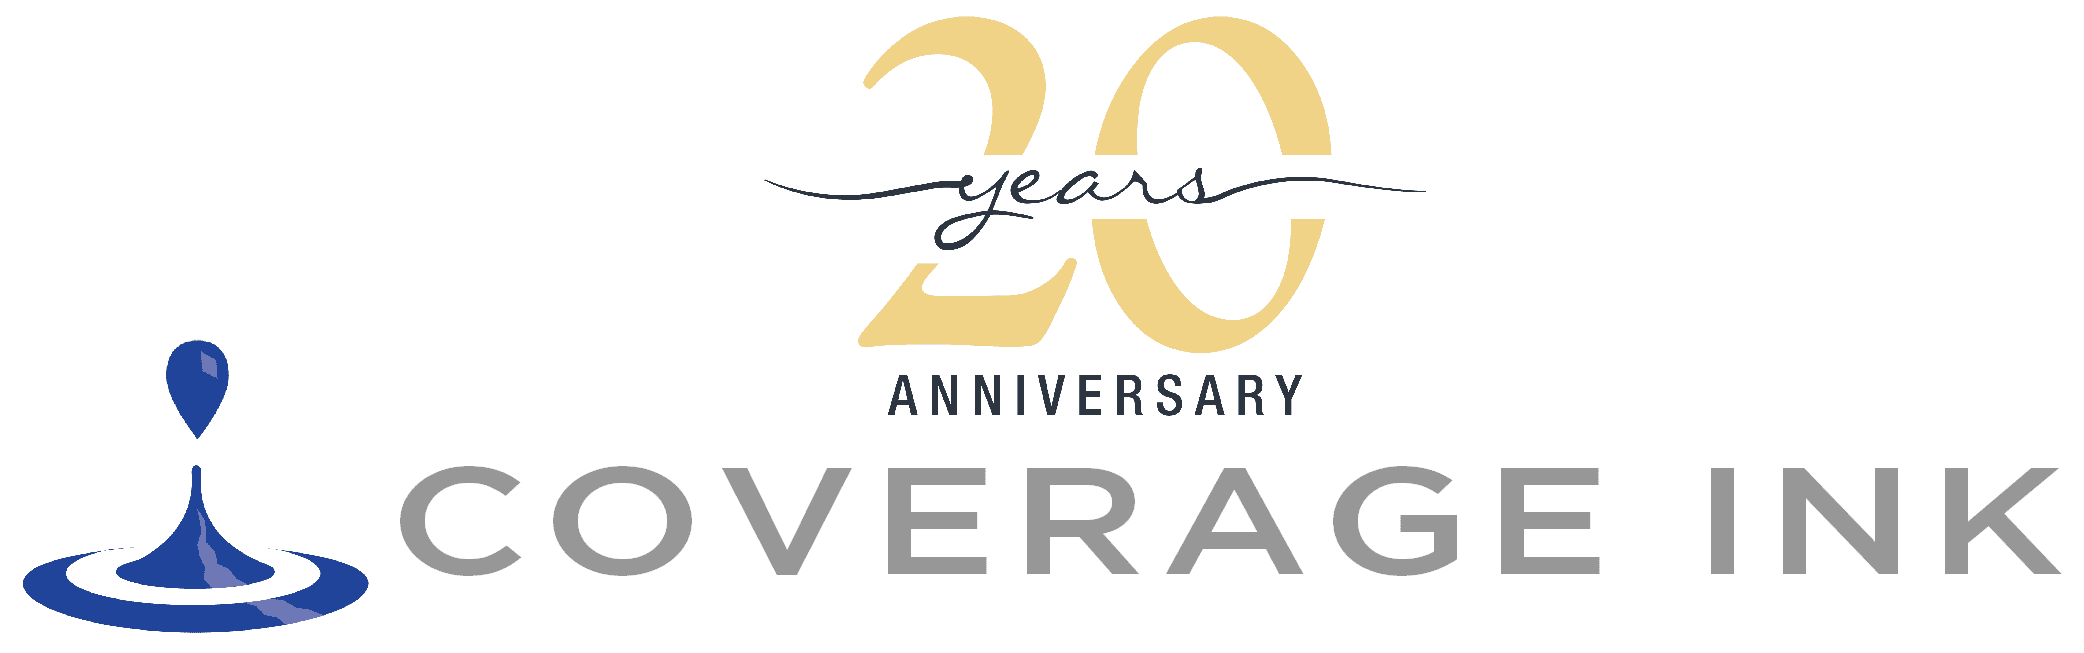 Coverage Ink 20 years Anniversary